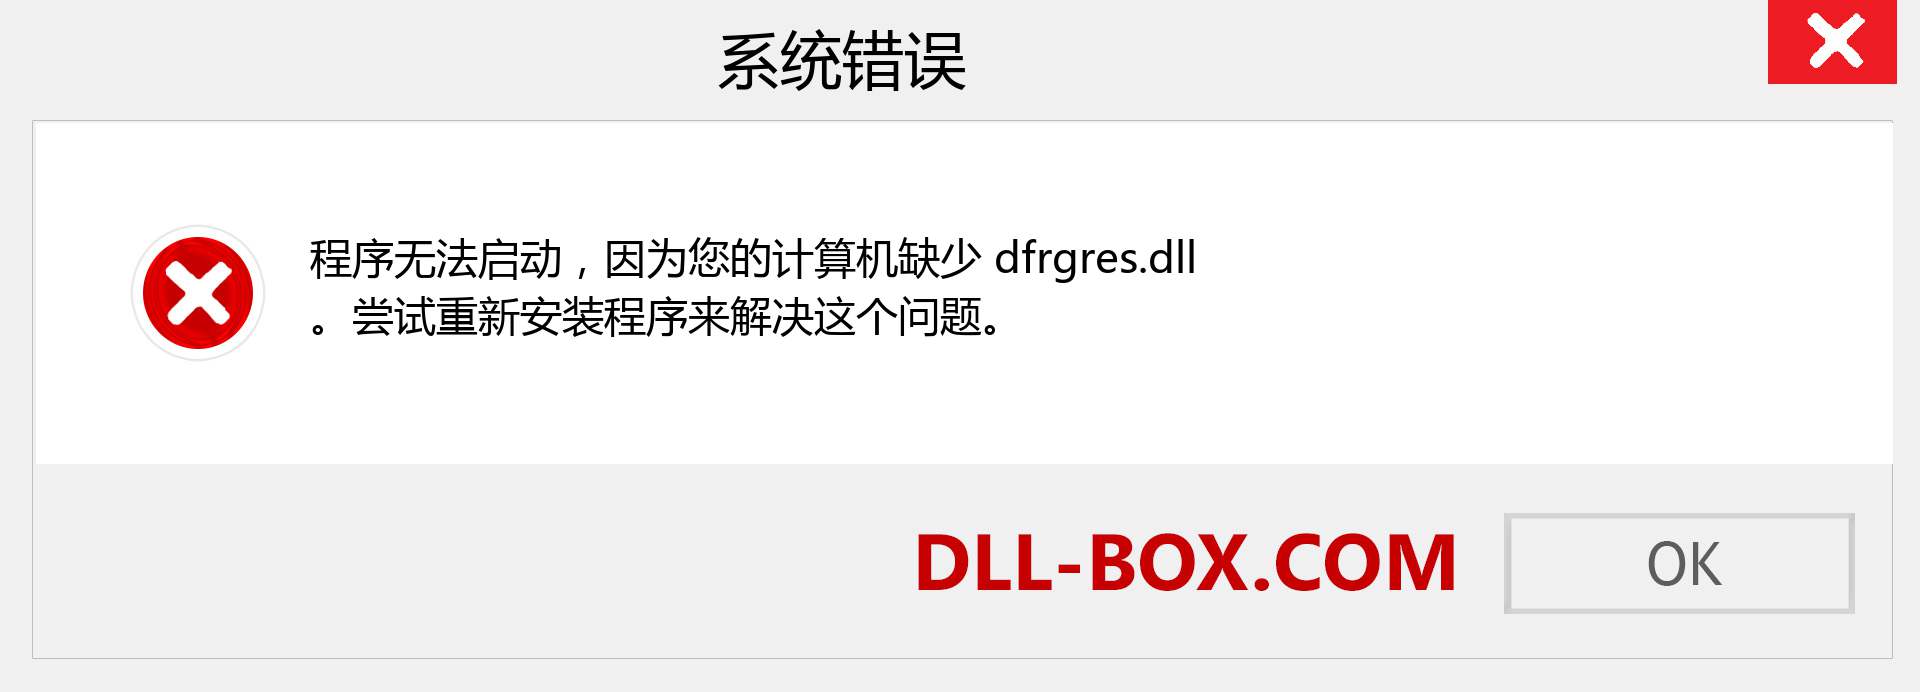 dfrgres.dll 文件丢失？。 适用于 Windows 7、8、10 的下载 - 修复 Windows、照片、图像上的 dfrgres dll 丢失错误